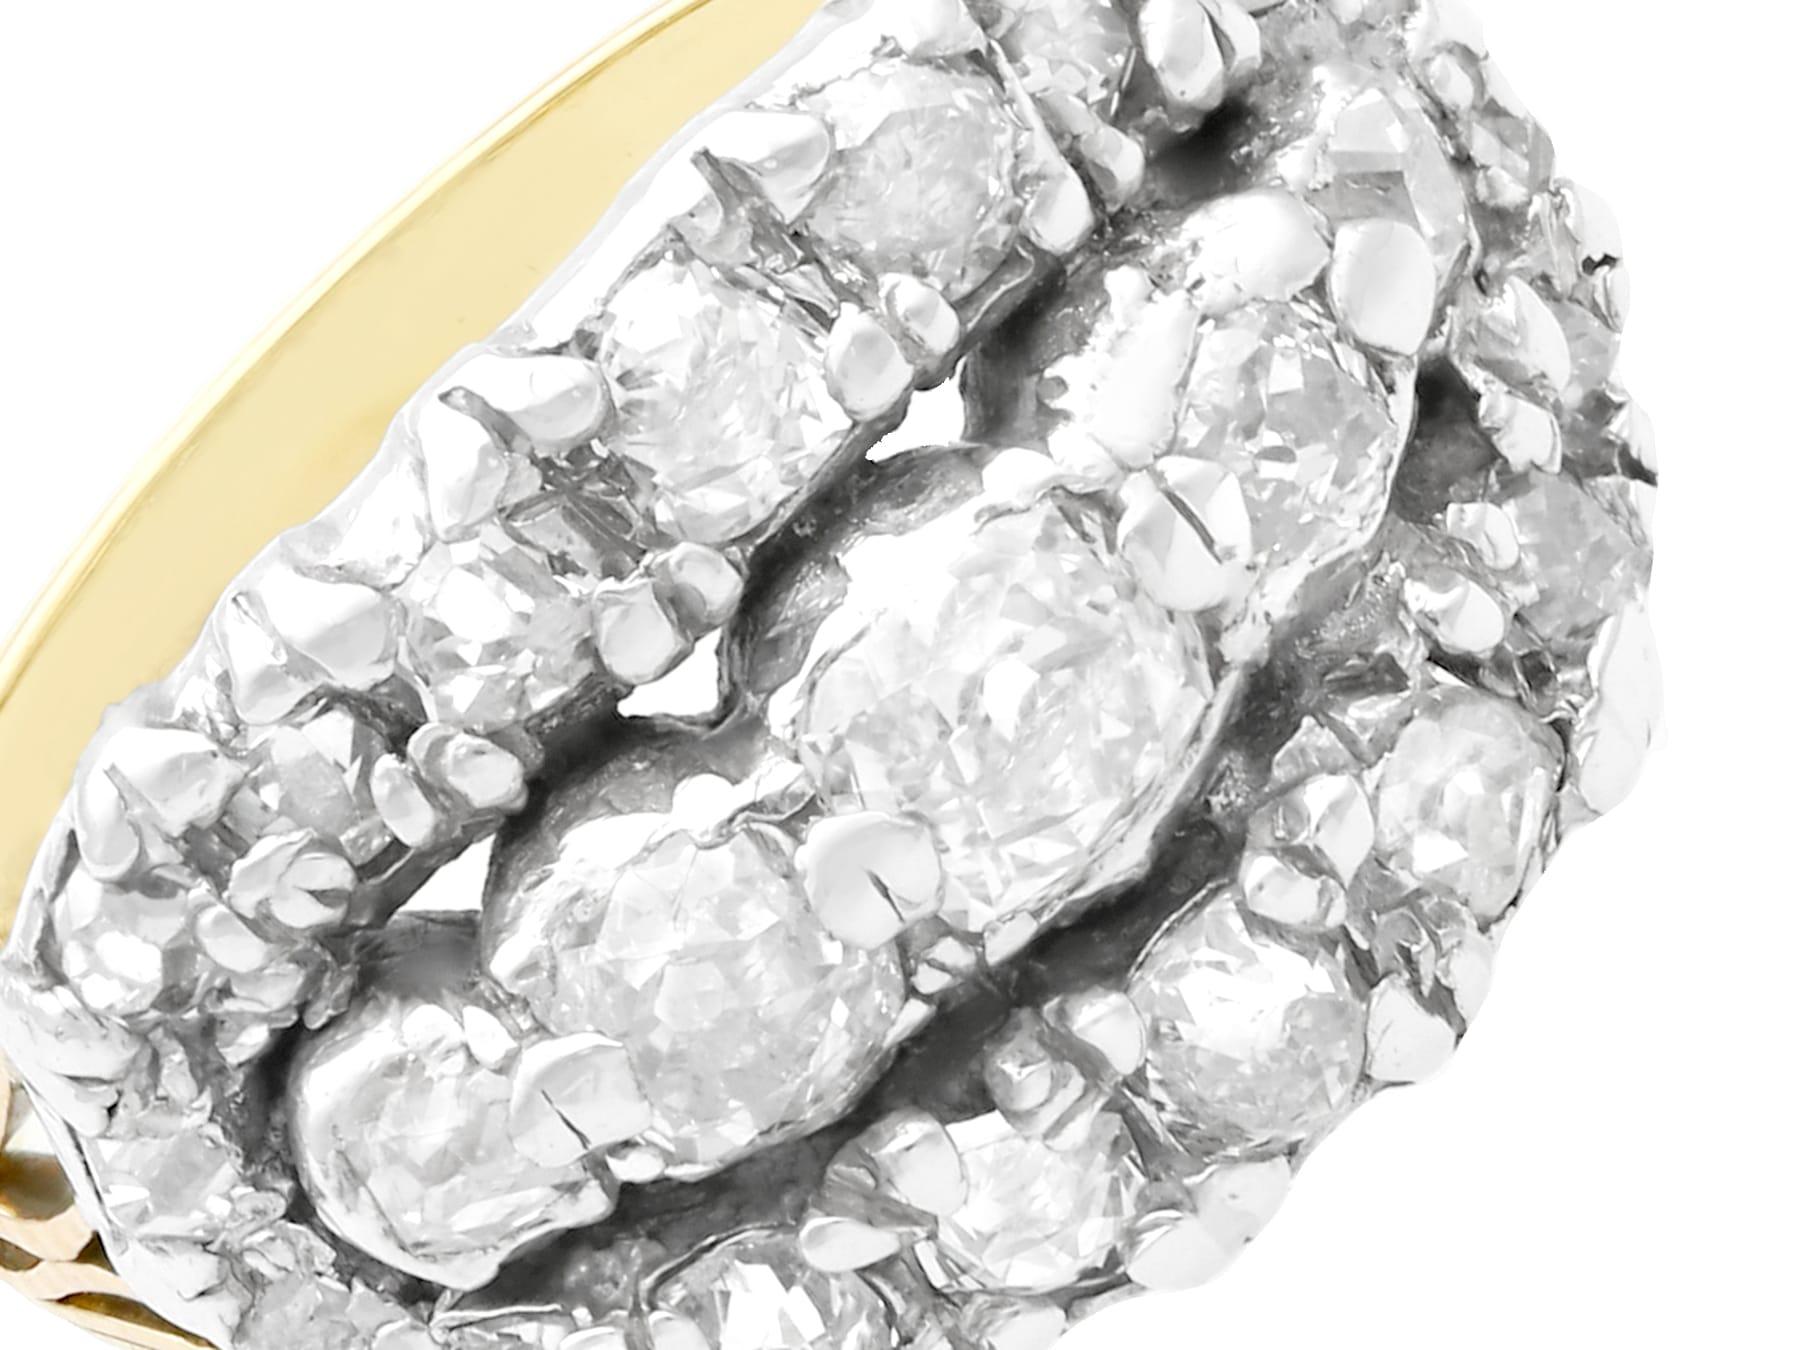 Une belle et impressionnante bague victorienne ancienne sertie d'un diamant de 1,72 carat, en or jaune 18 carats et en argent ; elle fait partie de nos collections de bijoux anciens et de bijoux de succession.

Cette belle et impressionnante bague